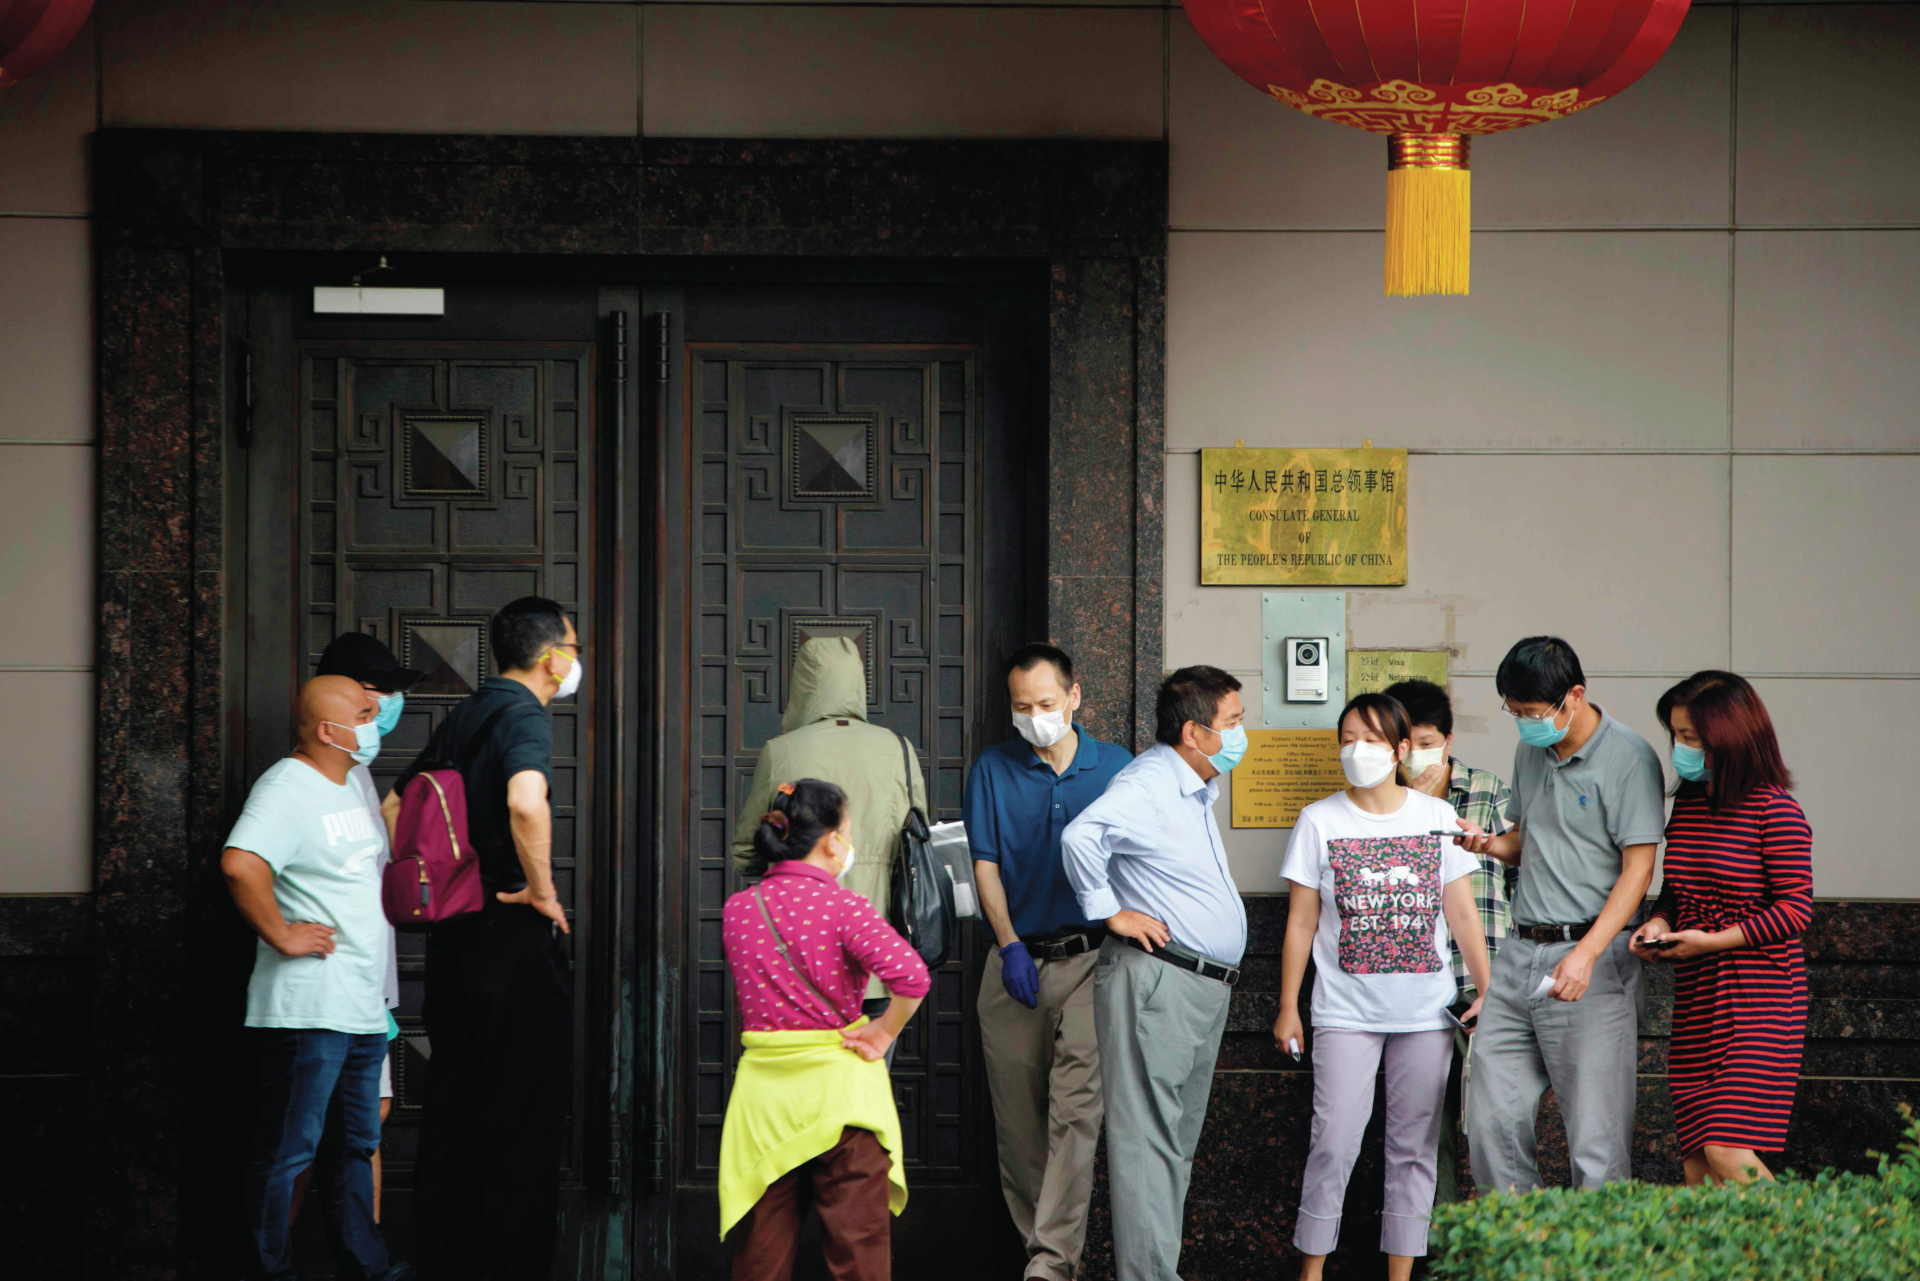 China. Cientista chinesa acusada de fraude refugia-se em consulado